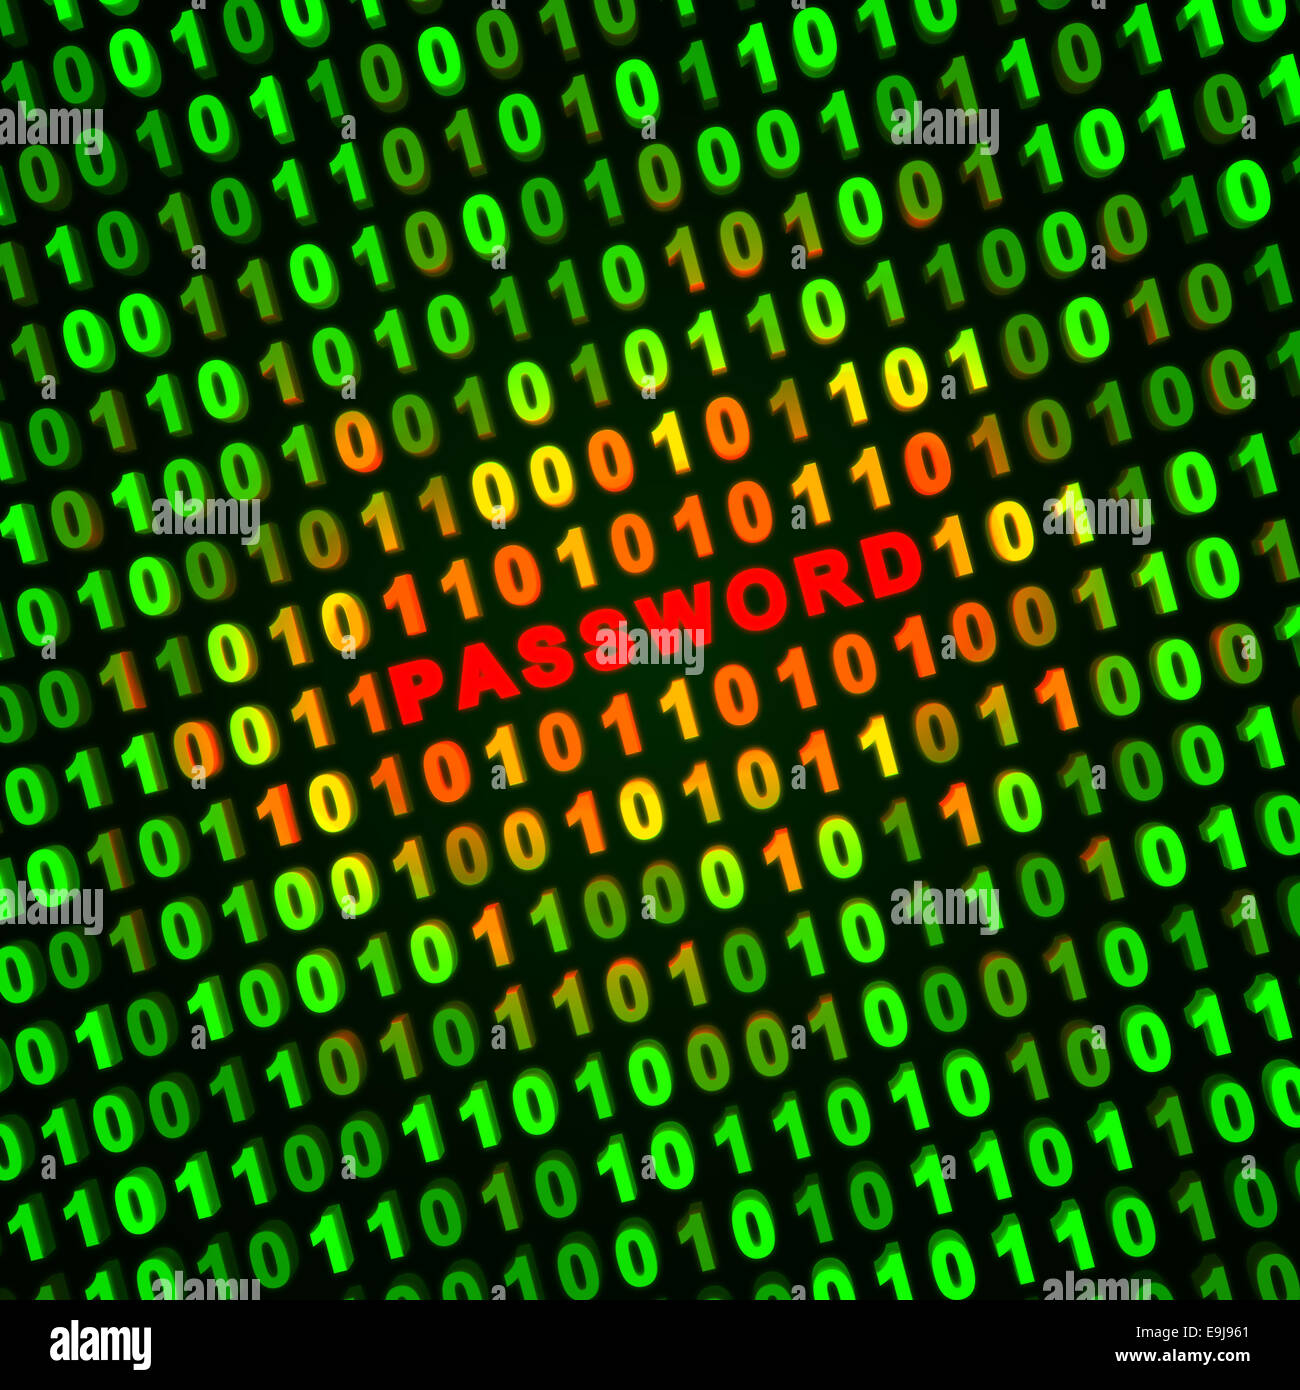 Zusammenfassung Hintergrund Computer - Passwort Stockfotografie - Alamy